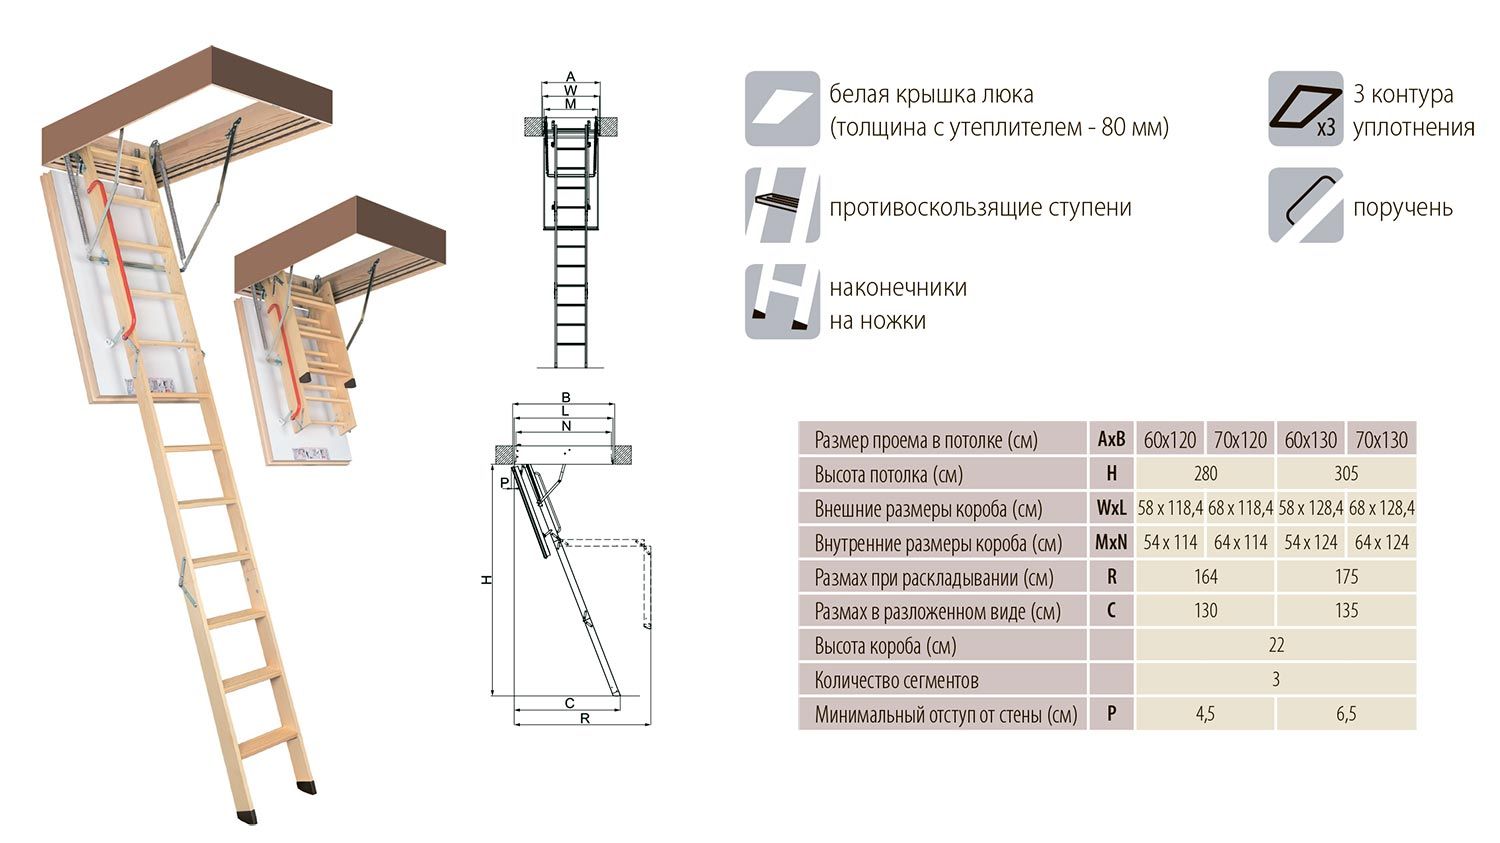 Лестницы Факро LWT, супертеплые крышки 80 мм, размеры и описание